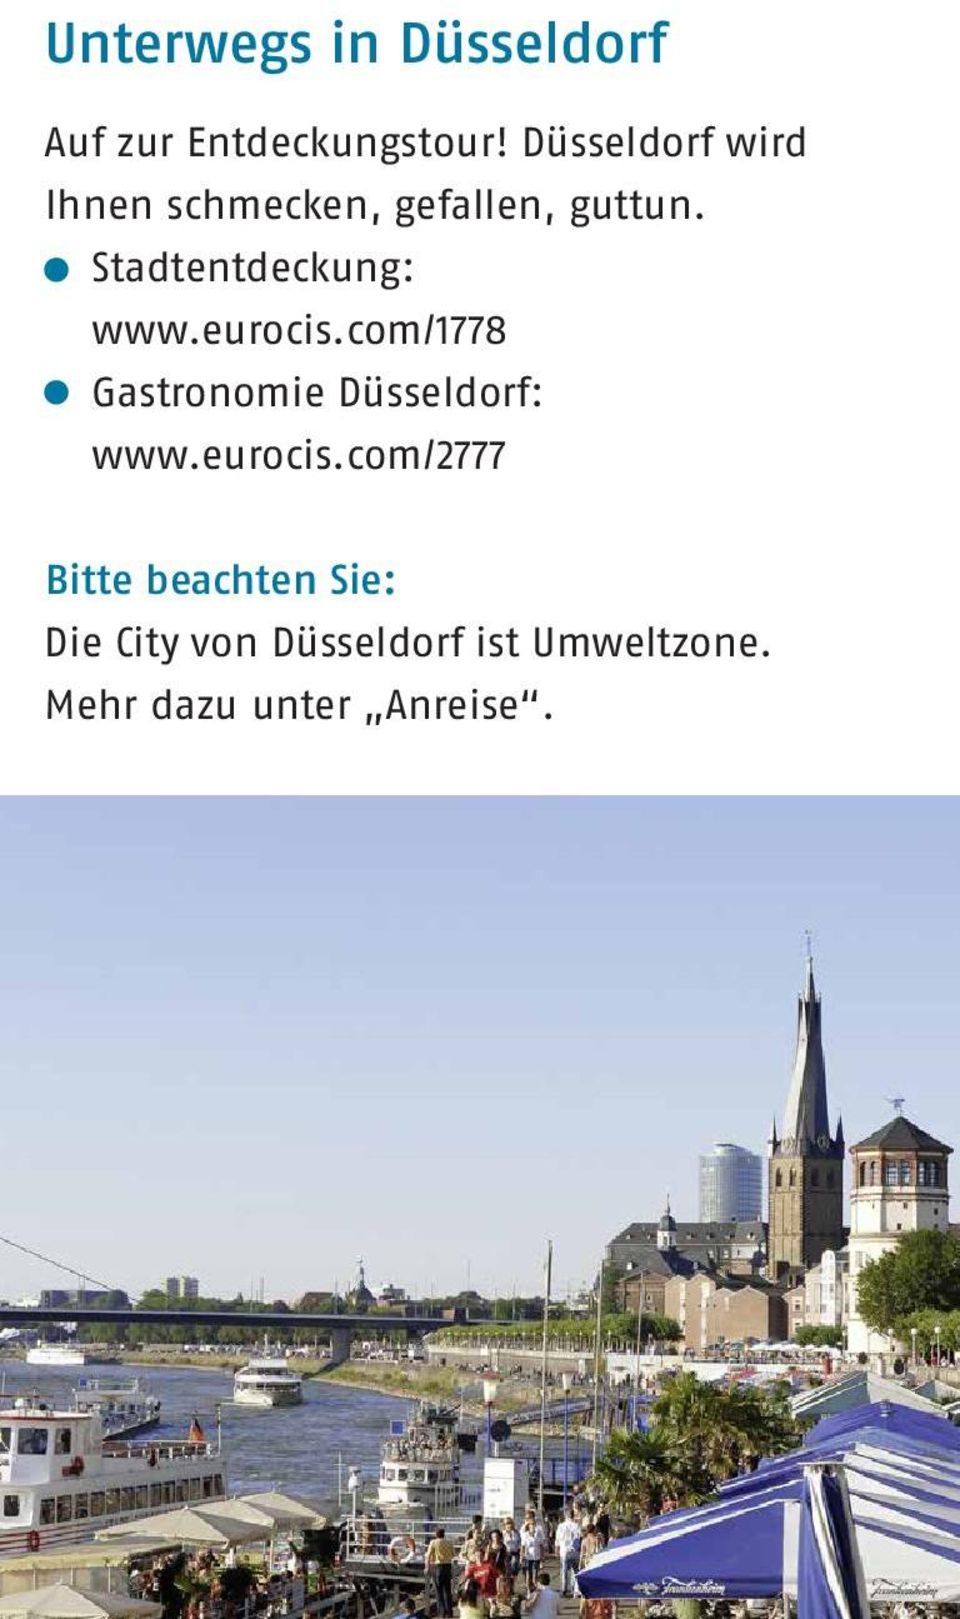 Stadtentdeckung: www.eurocis.com/1778 Gastronomie Düsseldorf: www.